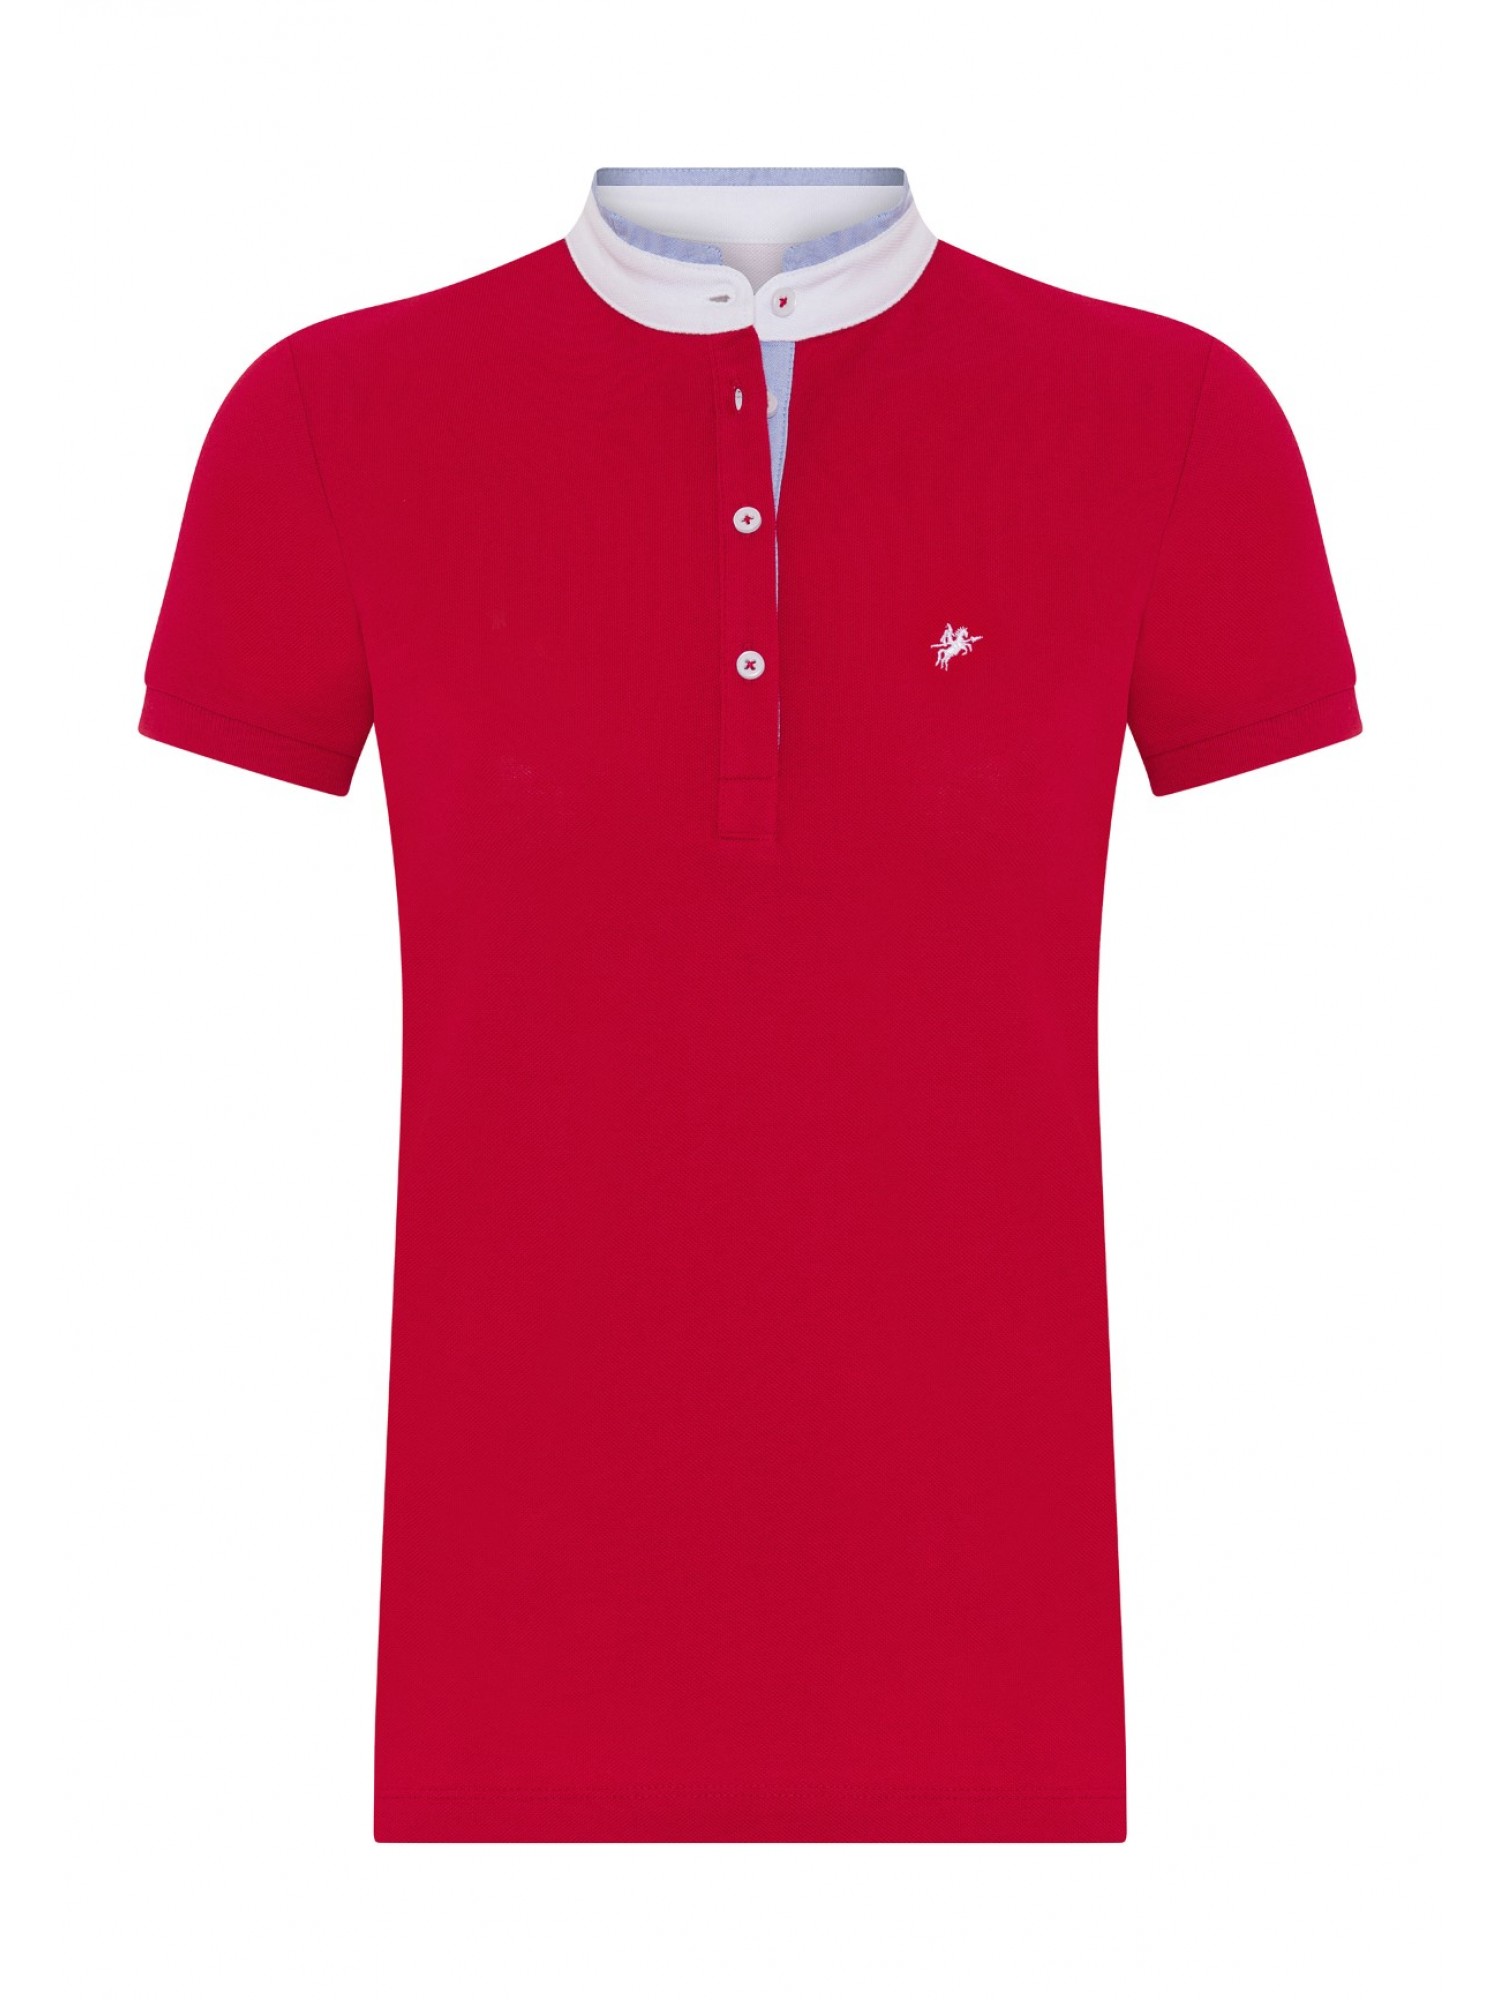 Womens Pique T-Shirt Rot B10565006R